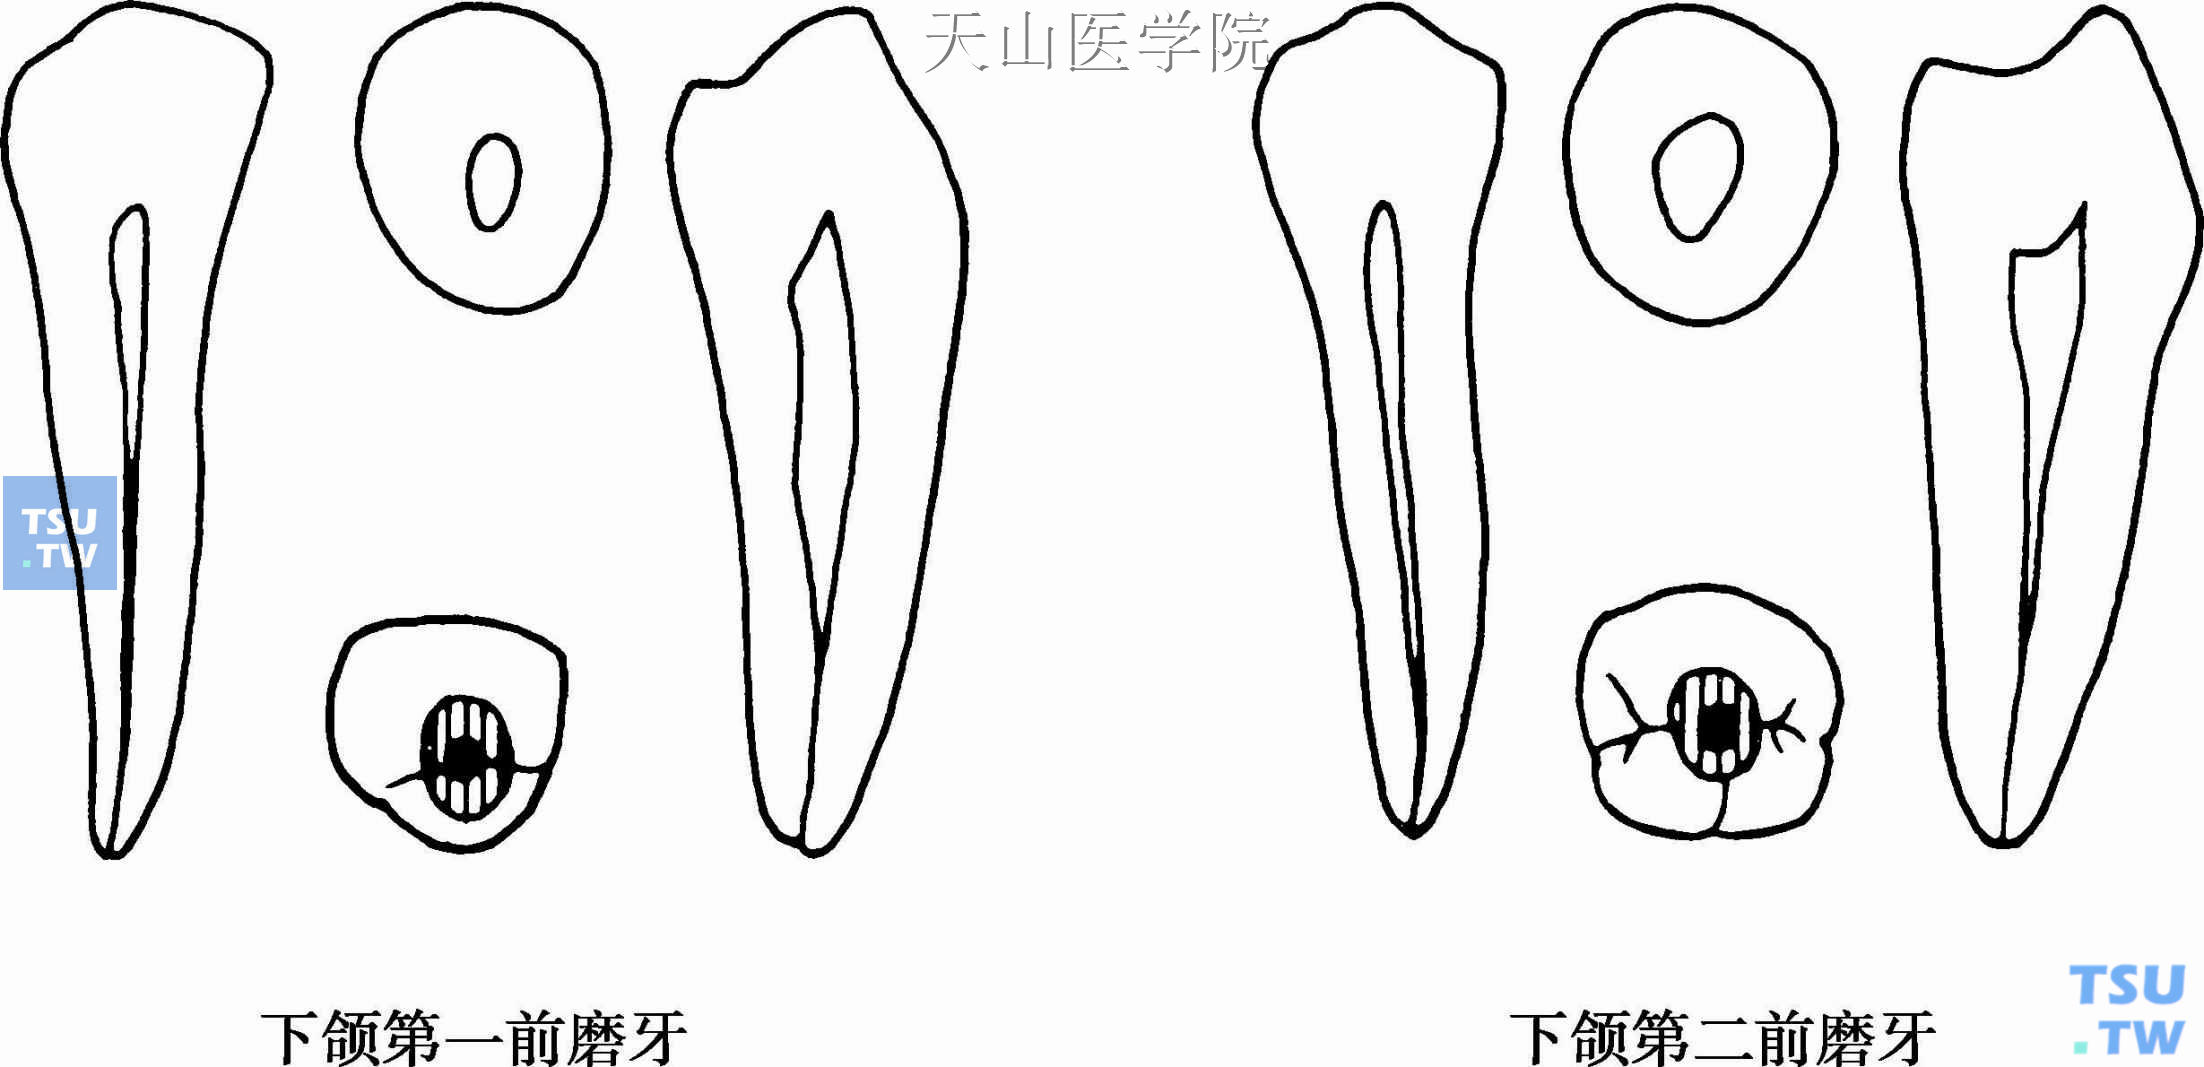 下颌前磨牙髓腔形态及开髓洞形